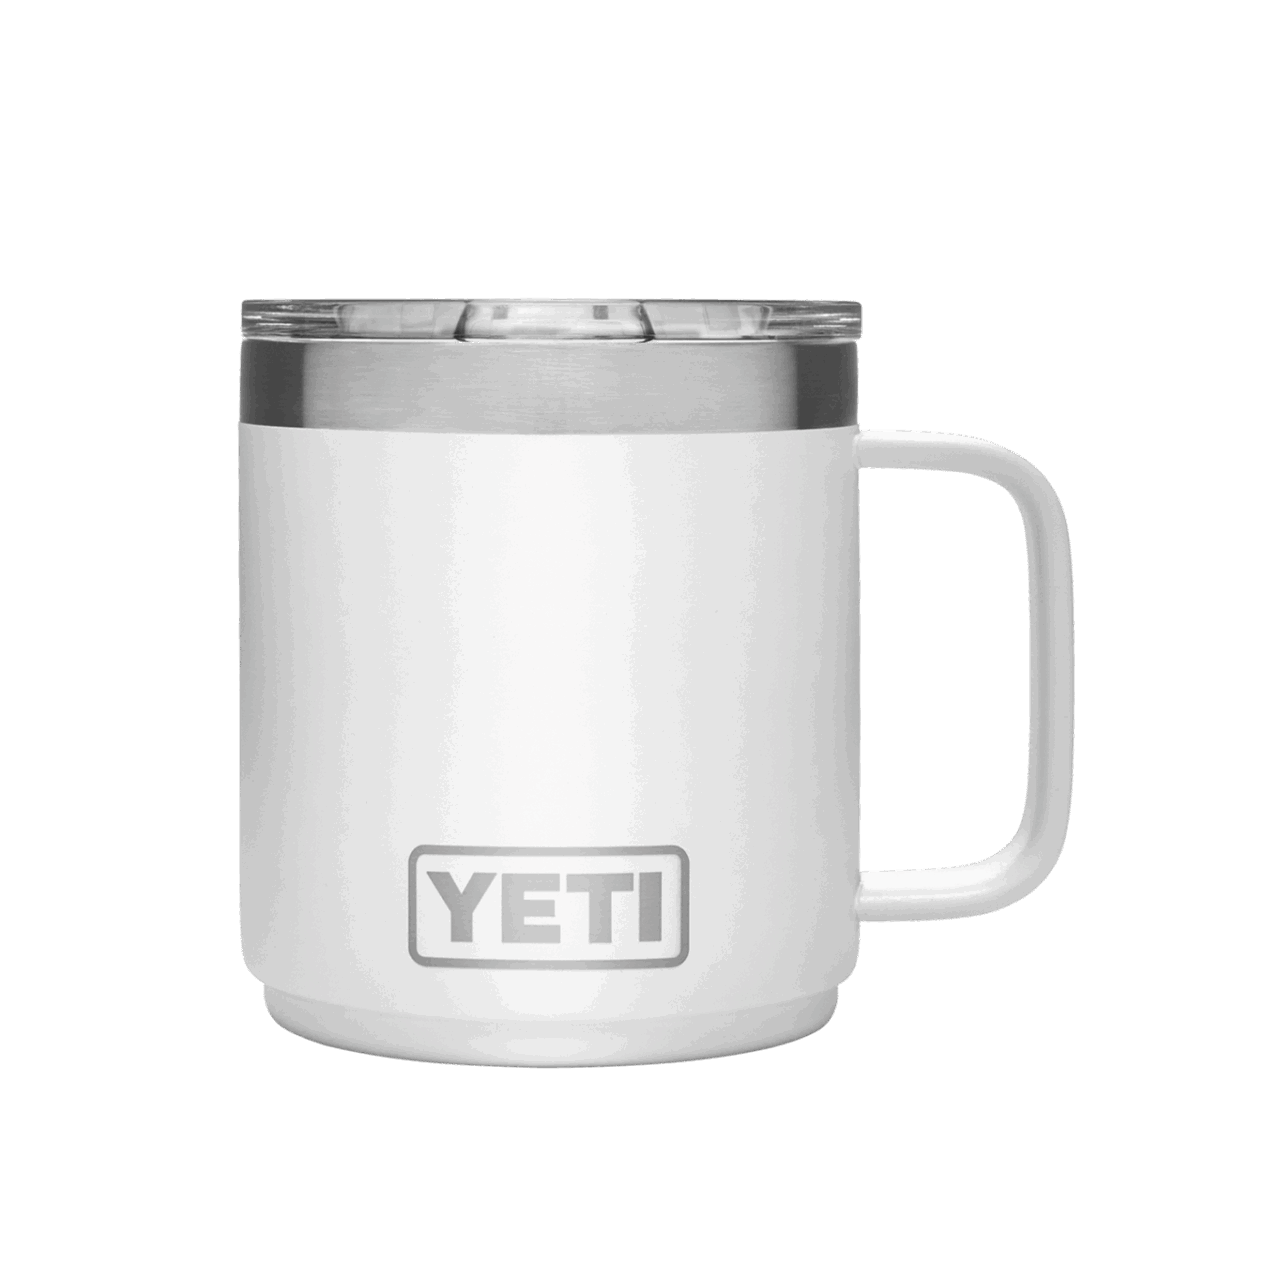 YETI Rambler 10 oz (300ml) Mug - white